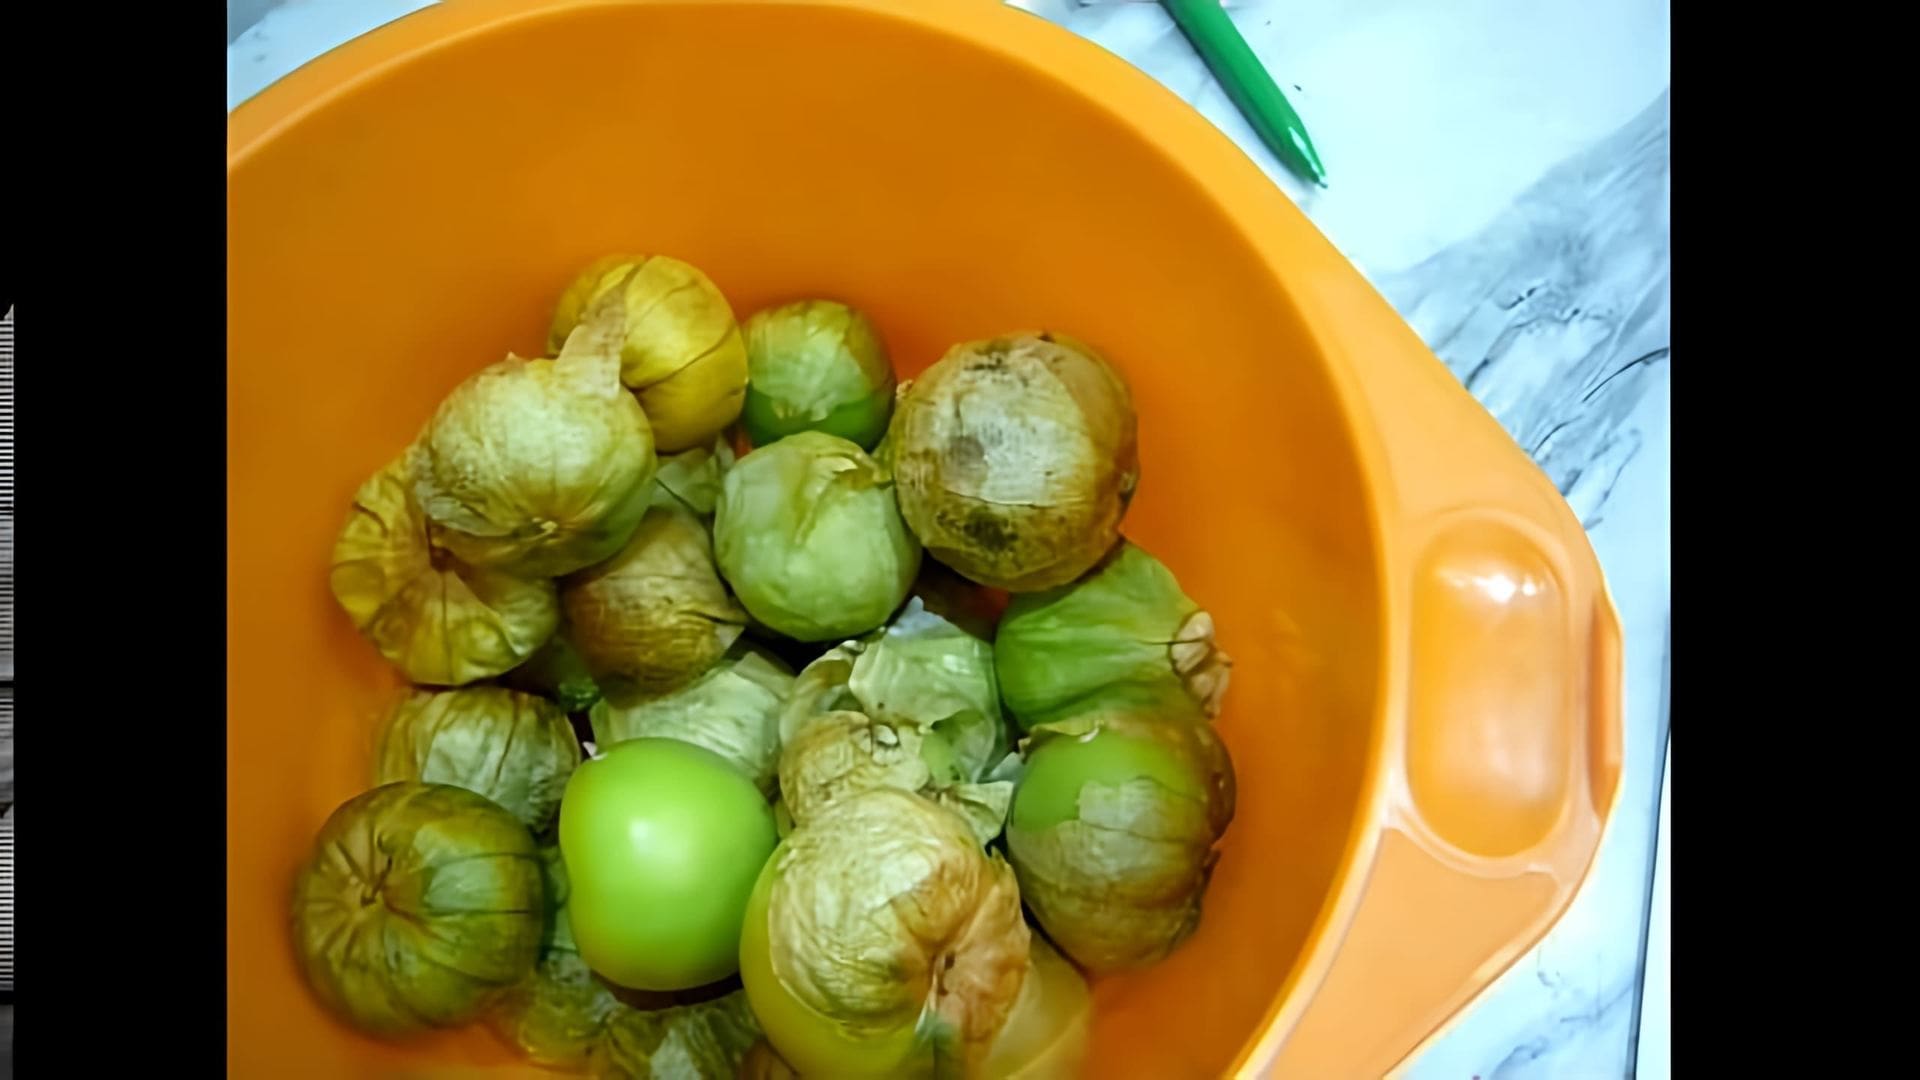 В данном видео рассказывается о физалисе овощном, который является растением семейства пасленовых